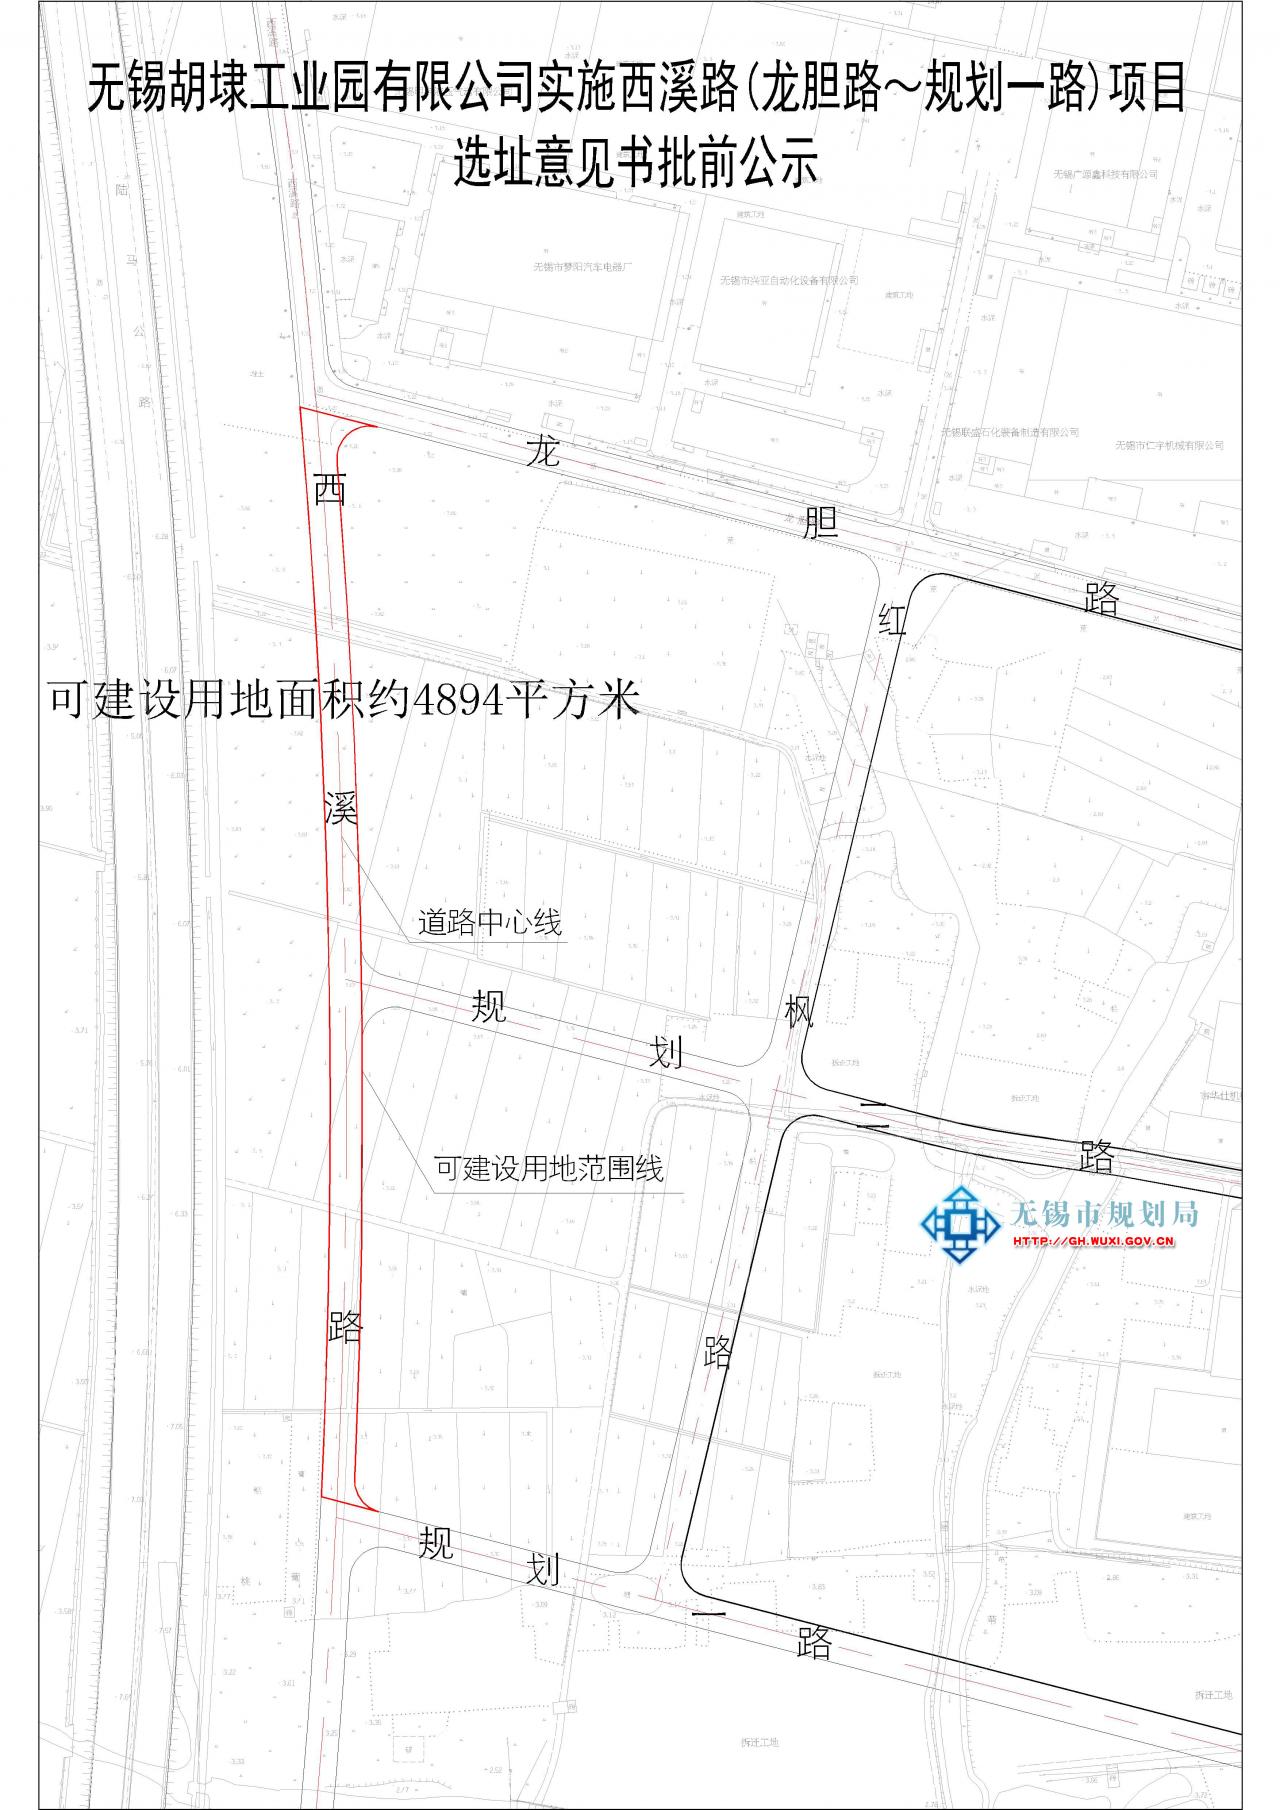 无锡胡埭工业园有限公司实施西溪路(龙胆路～规划一路)项目 选址意见书批前公示